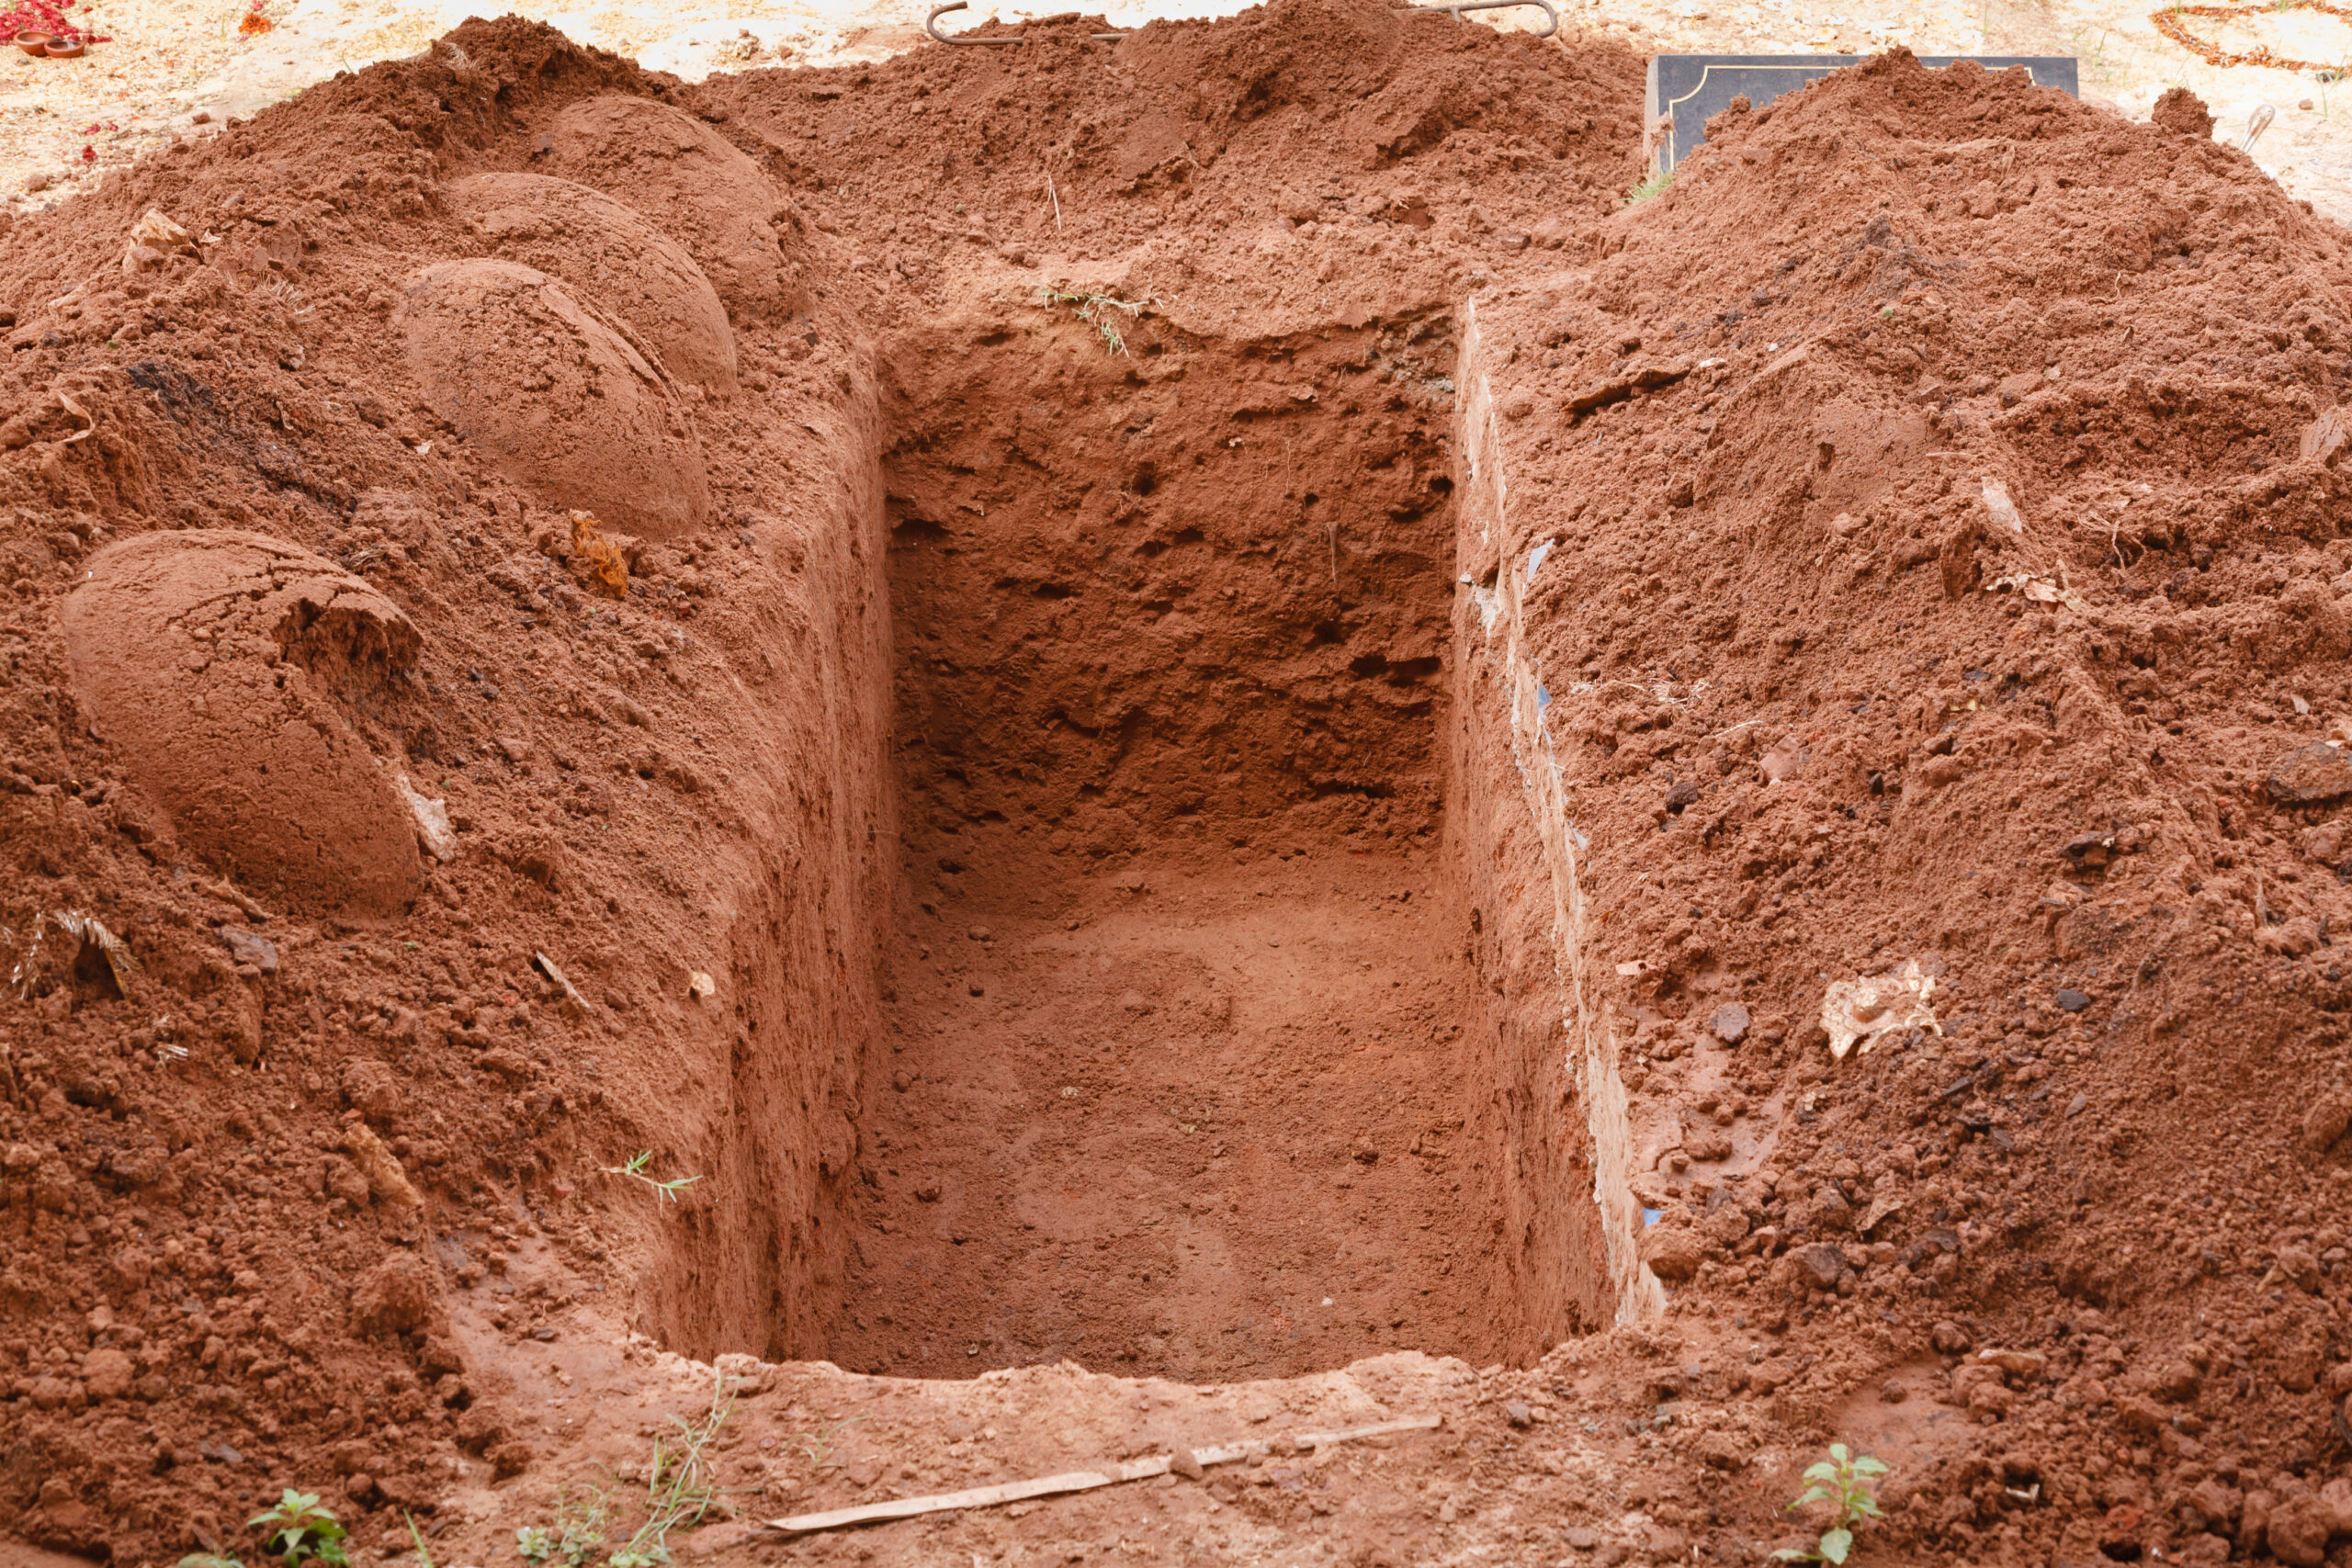 A dirt open grave with no casket